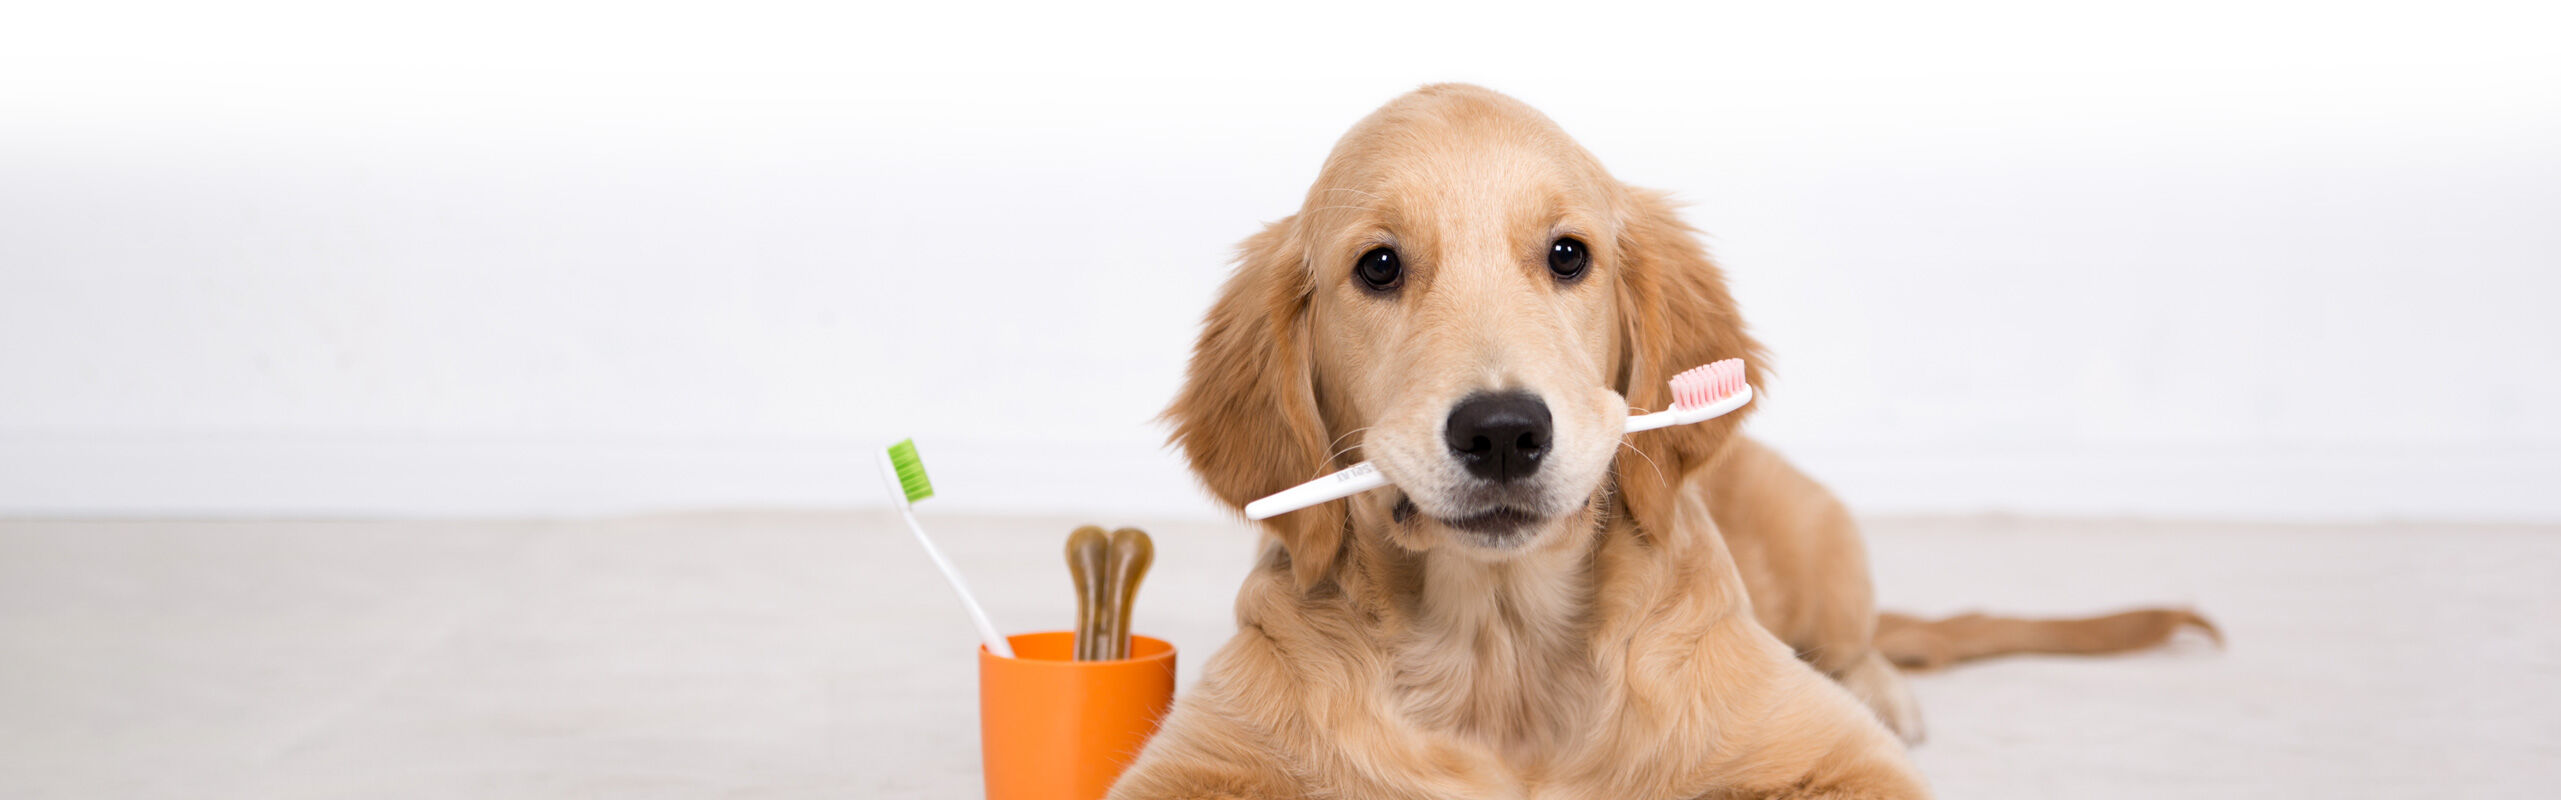 Zahnpflege für Hunde Zahnstein